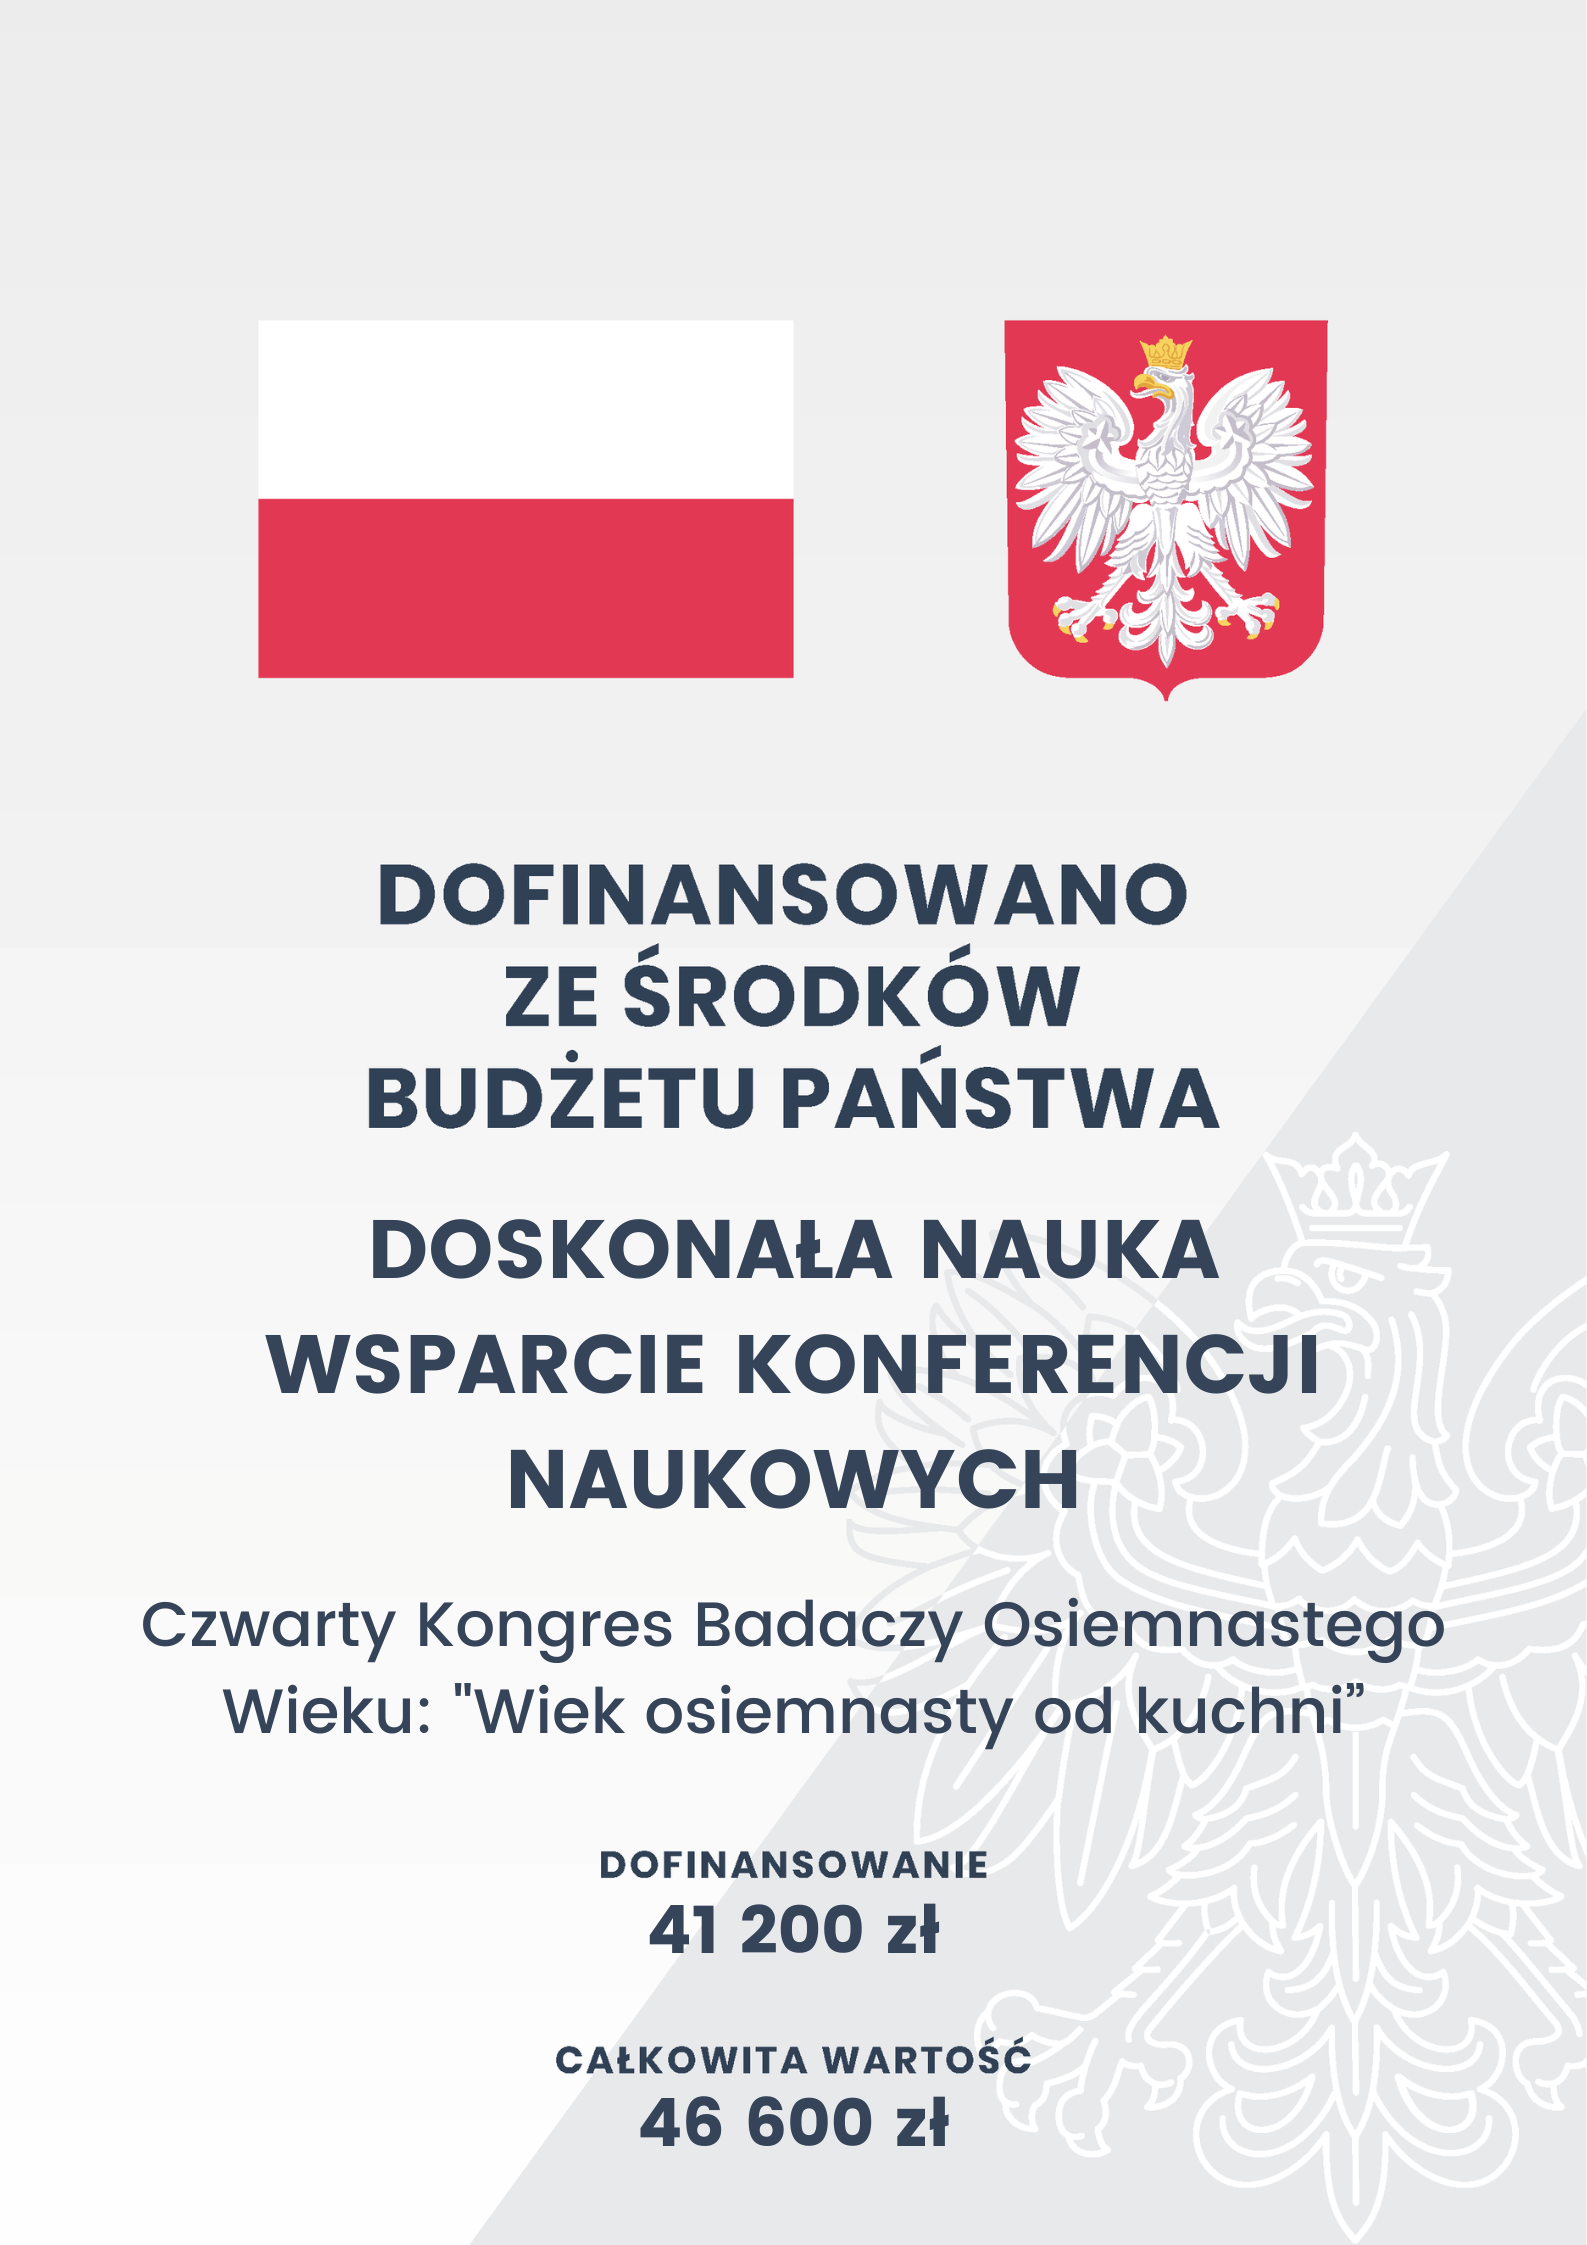 flaga Polski, godło Polski, napis "dofinansowano ze środków budżetu państwa"